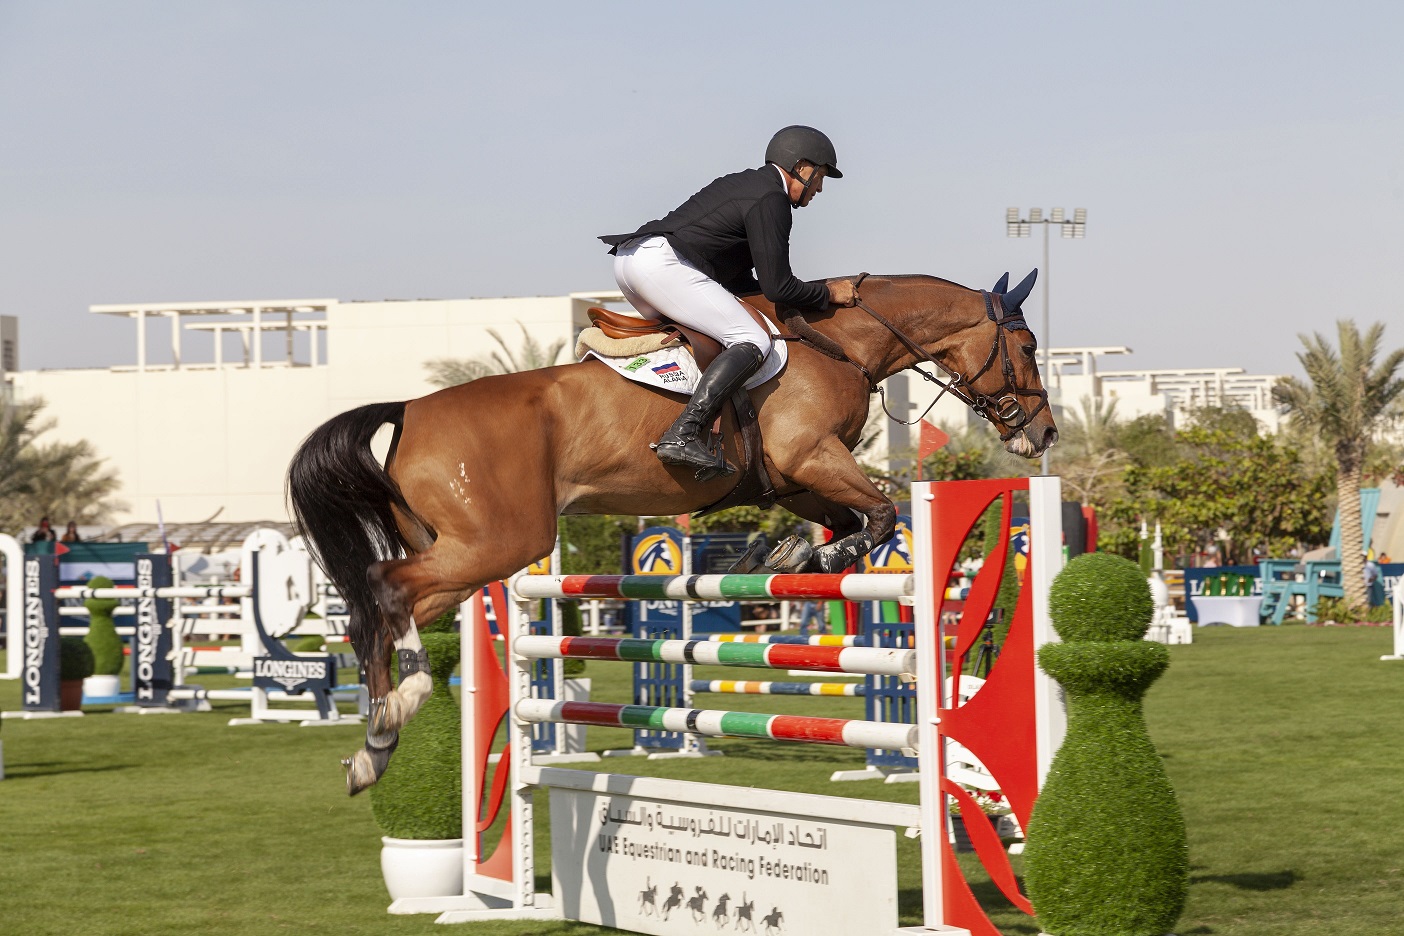 دبي تحتضن الدورة الثالثة من بطولة الخيول الدولية 2020